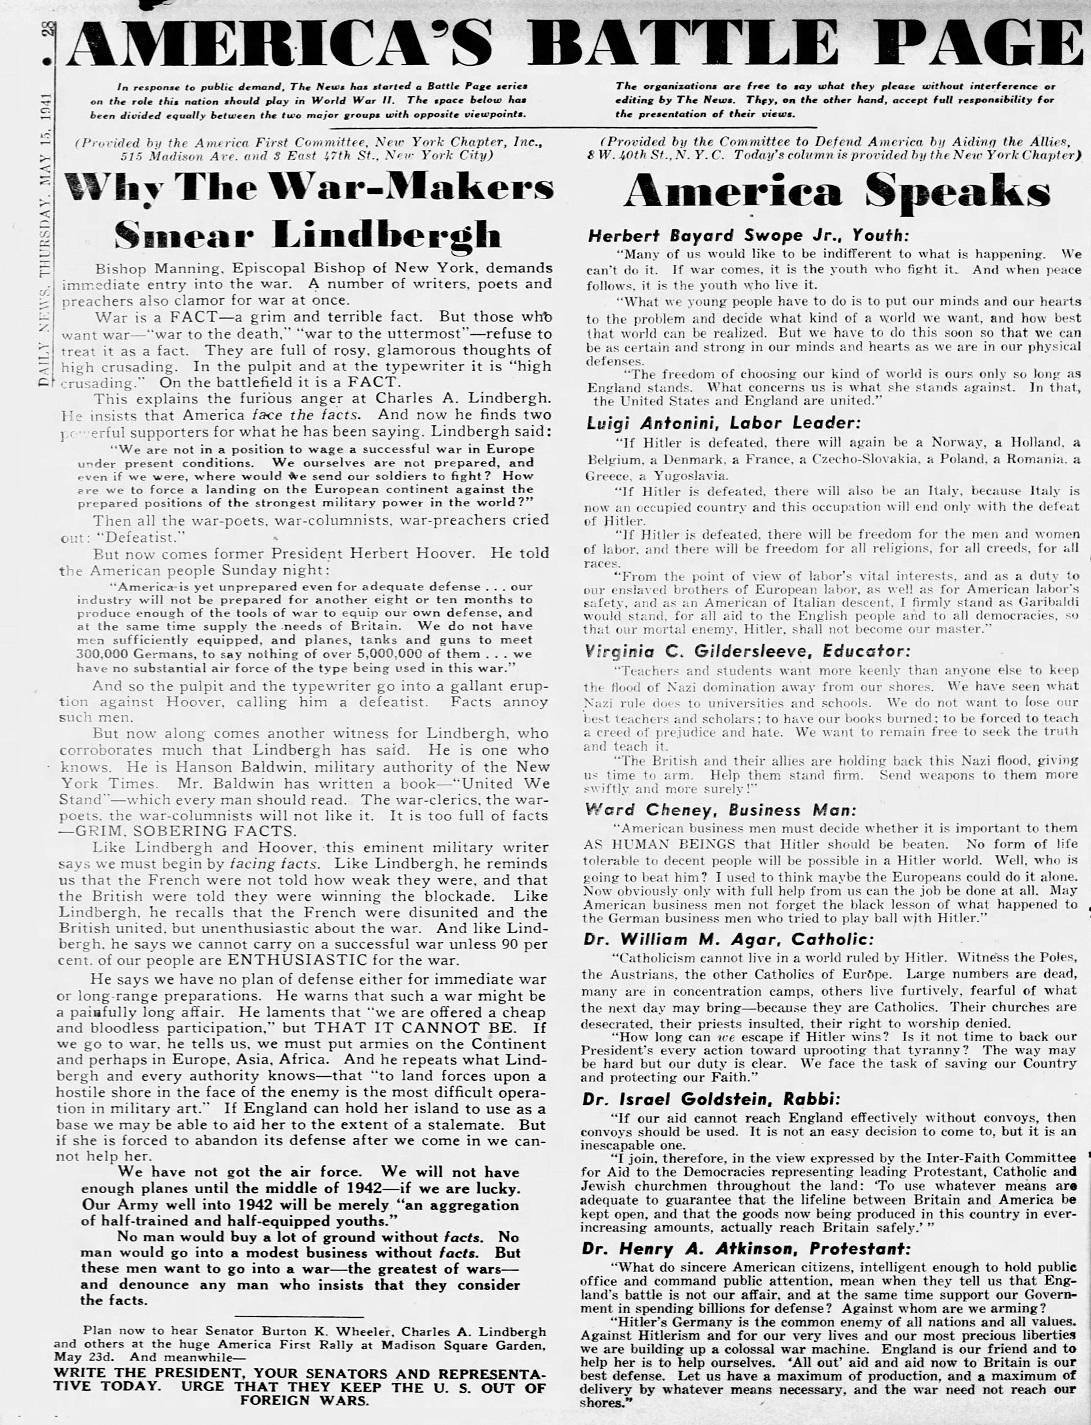 Daily_News_Thu__May_15__1941_(3).jpg